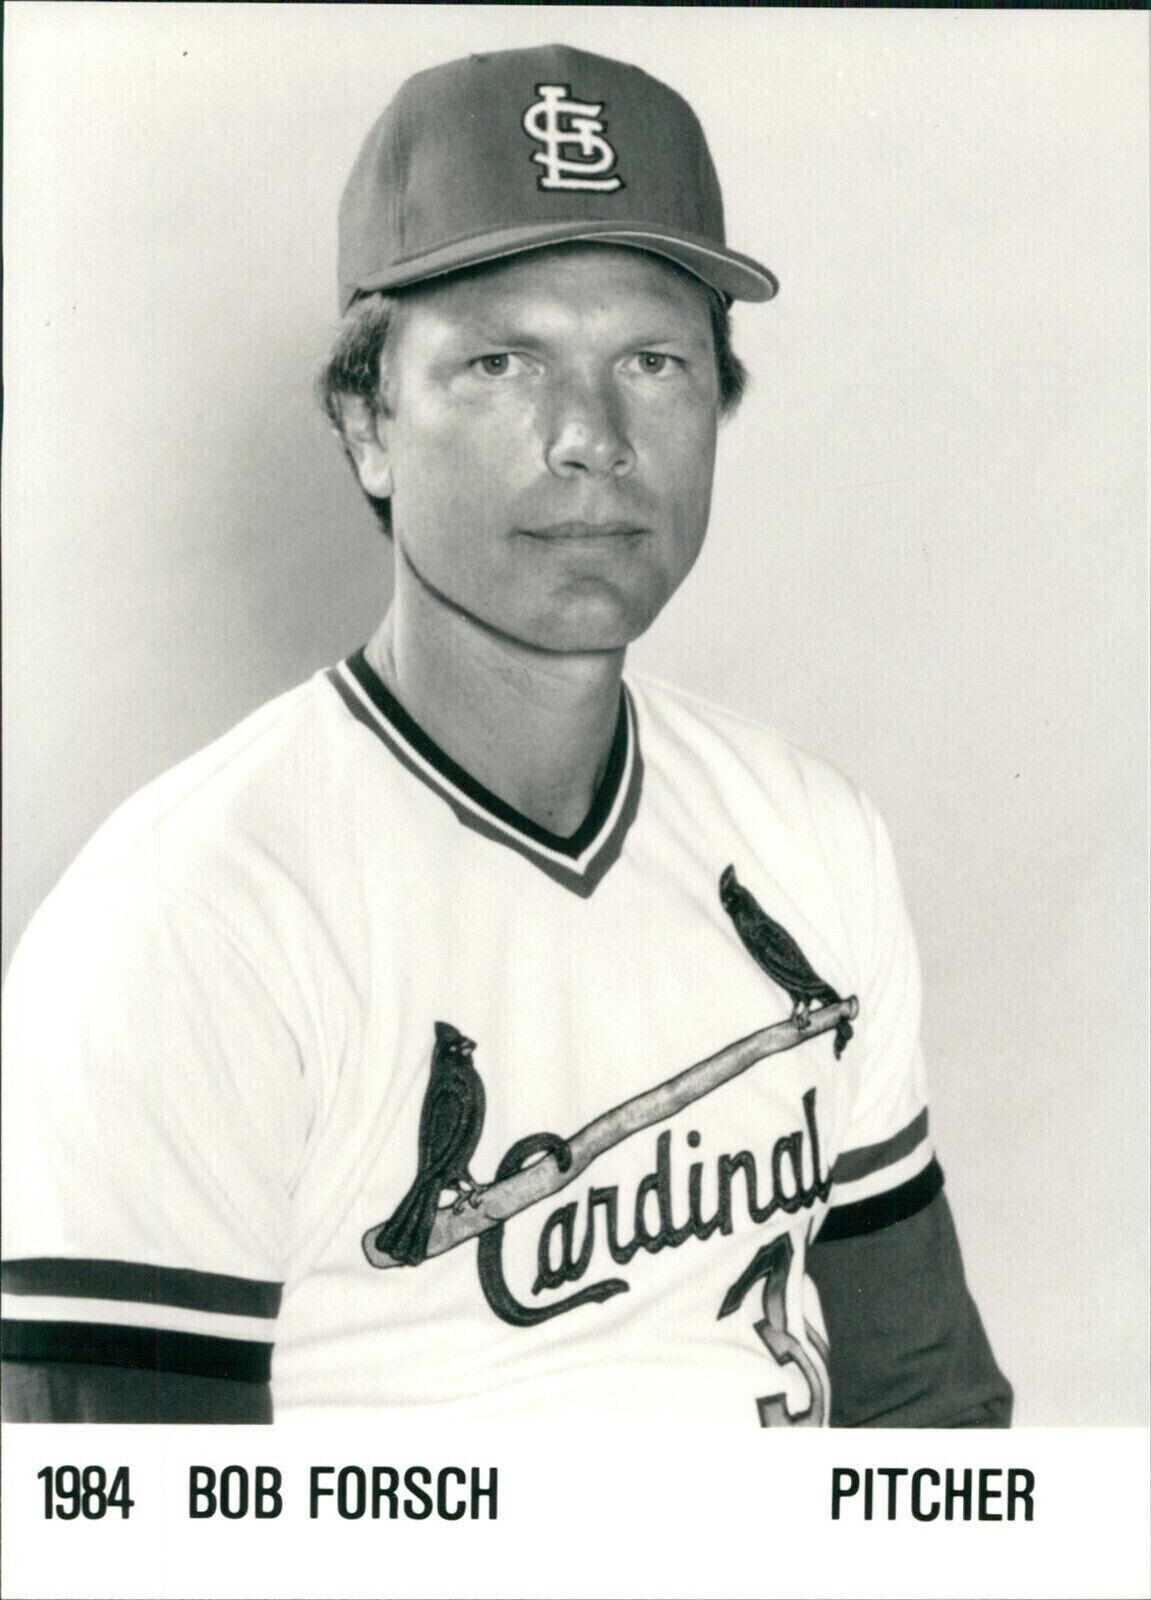 1984 Bob Forsch St Louis Cardinals Pitcher Major League Ball Sports 5X7 Photo